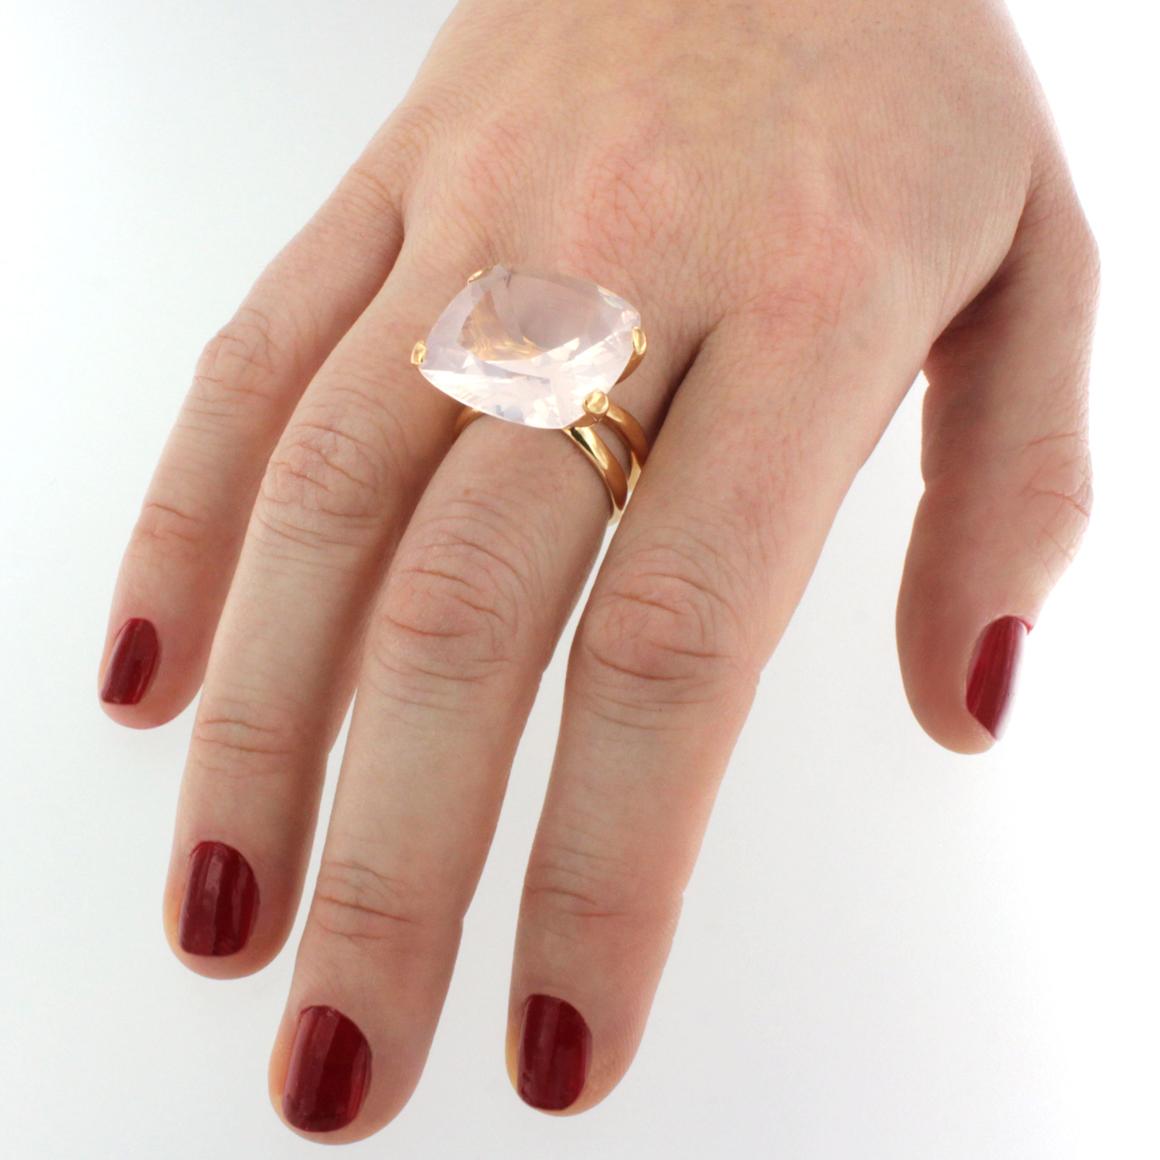 Großer Stein in heller Farbe für diesen erstaunlichen Ring aus 18k Roségold, handgefertigt in Italien von Stanoppi Jewellery seit 1948.     Pinq Quarz (quadratischer Schliff, Größe: 20x20 mm)   g.12,00

Größe des Rings:  15 EU - 7,5 USA 

Alle